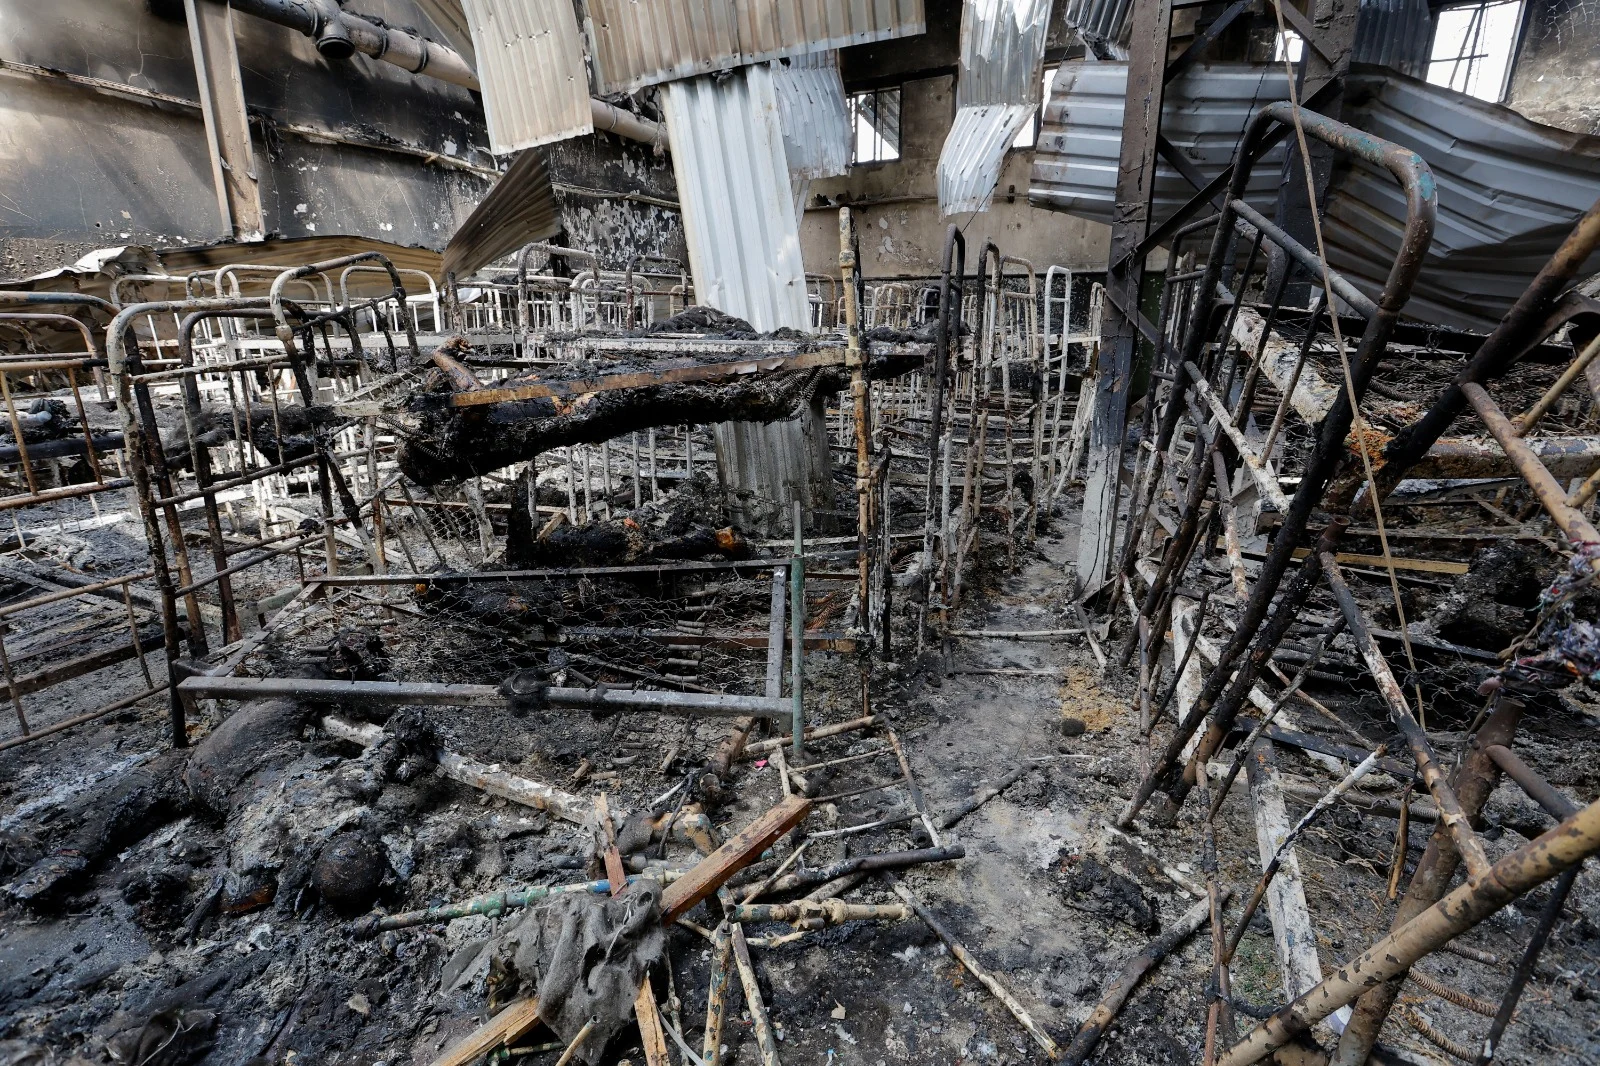 53 הרוגים ועשרות פצועים בהפגזת בית סוהר: זלנסקי קרא לעולם להכיר ברוסיה כמדינת טרור